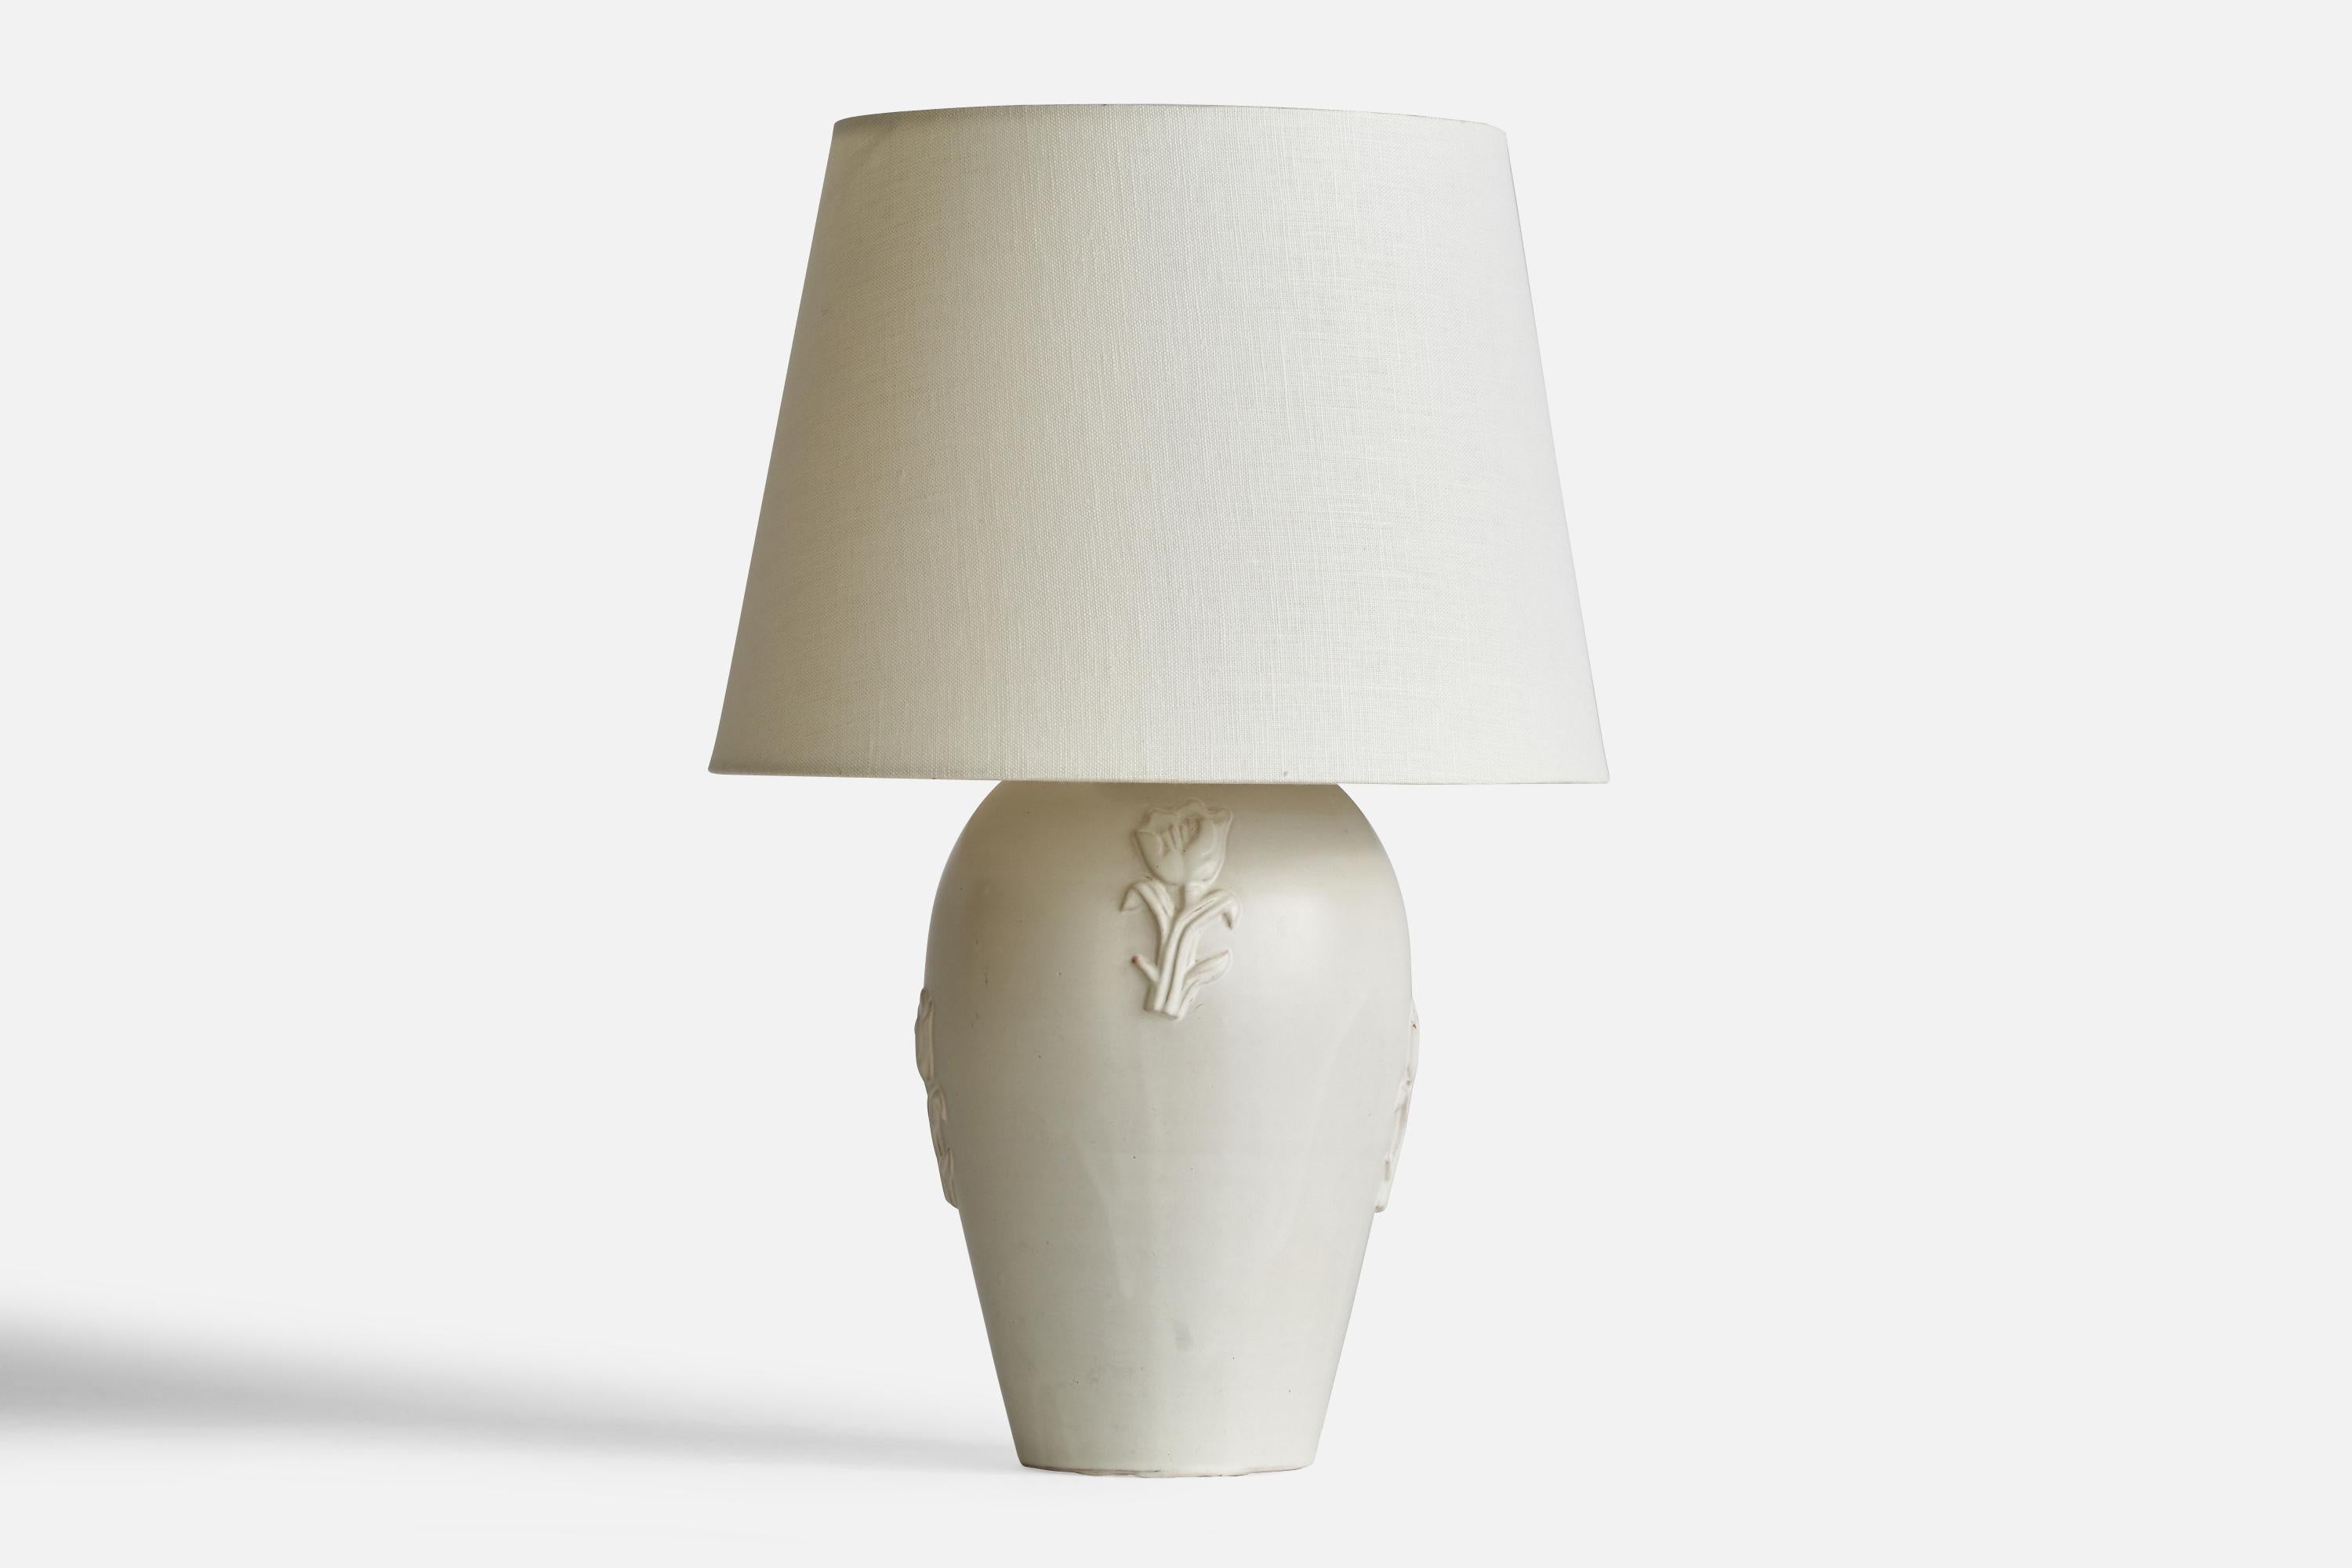 Lampe de table en céramique à glaçure blanche conçue par Whiting et produite par Nittsjö, Suède, années 1930.

Dimensions de la lampe (pouces) : 12.1